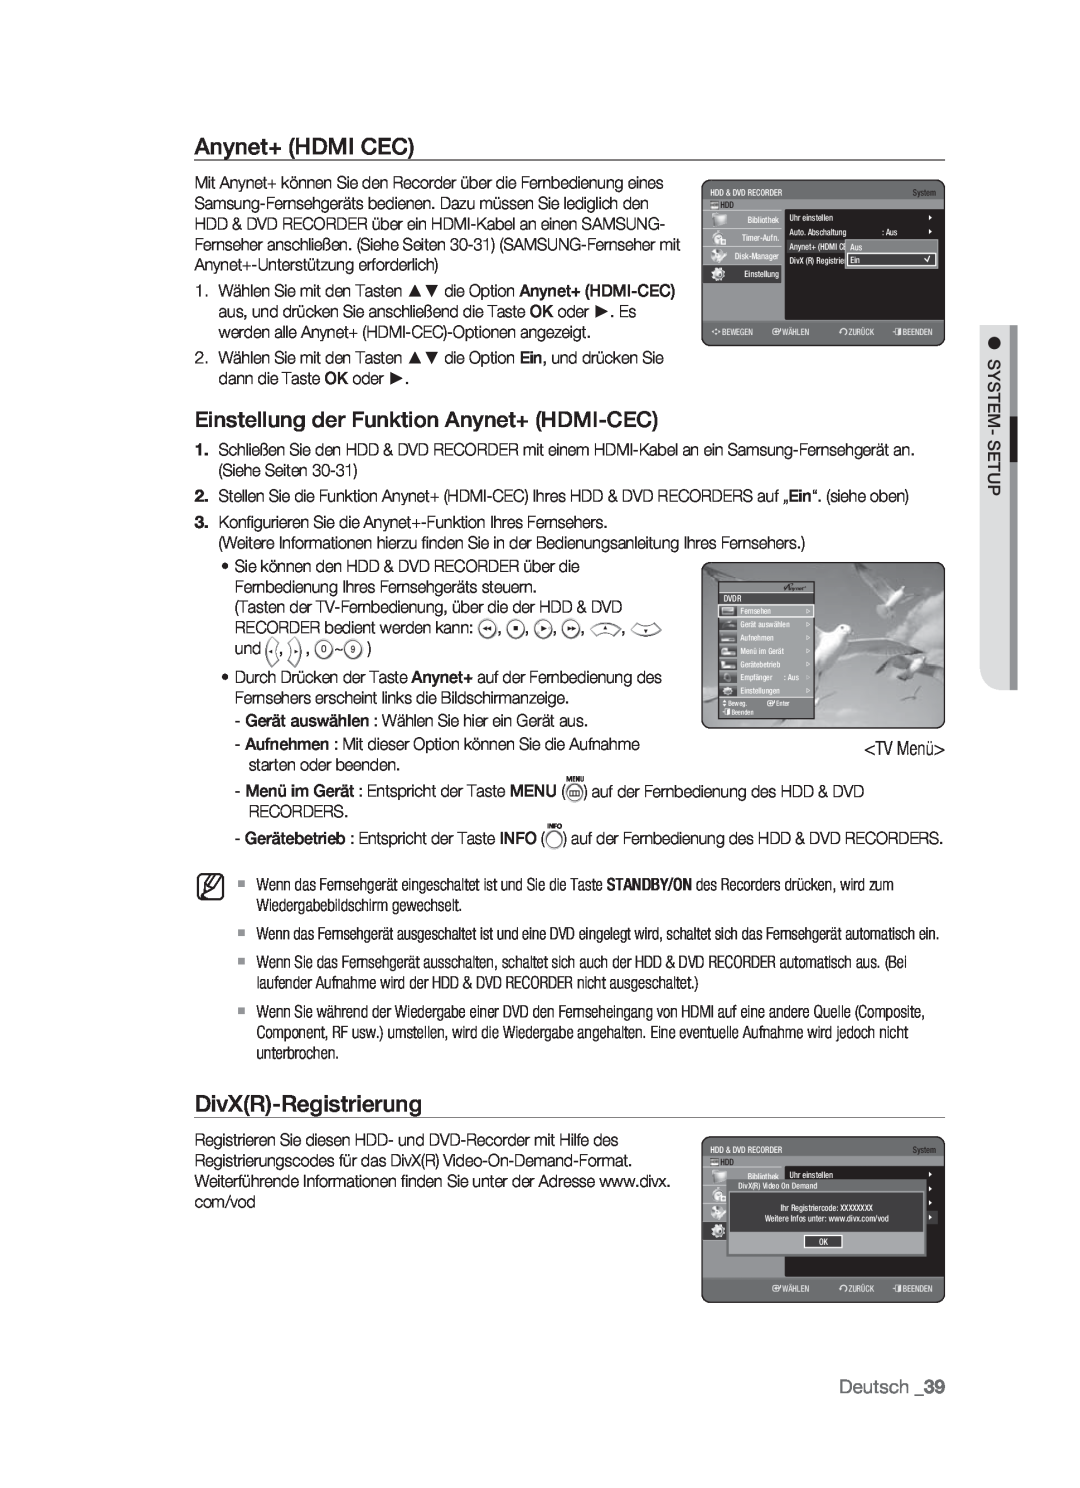 Samsung DVD-HR773/AUS manual Anynet+ HDMI CEC, Einstellung der Funktion Anynet+ HDMI-CEC, DivXR-Registrierung, Deutsch 